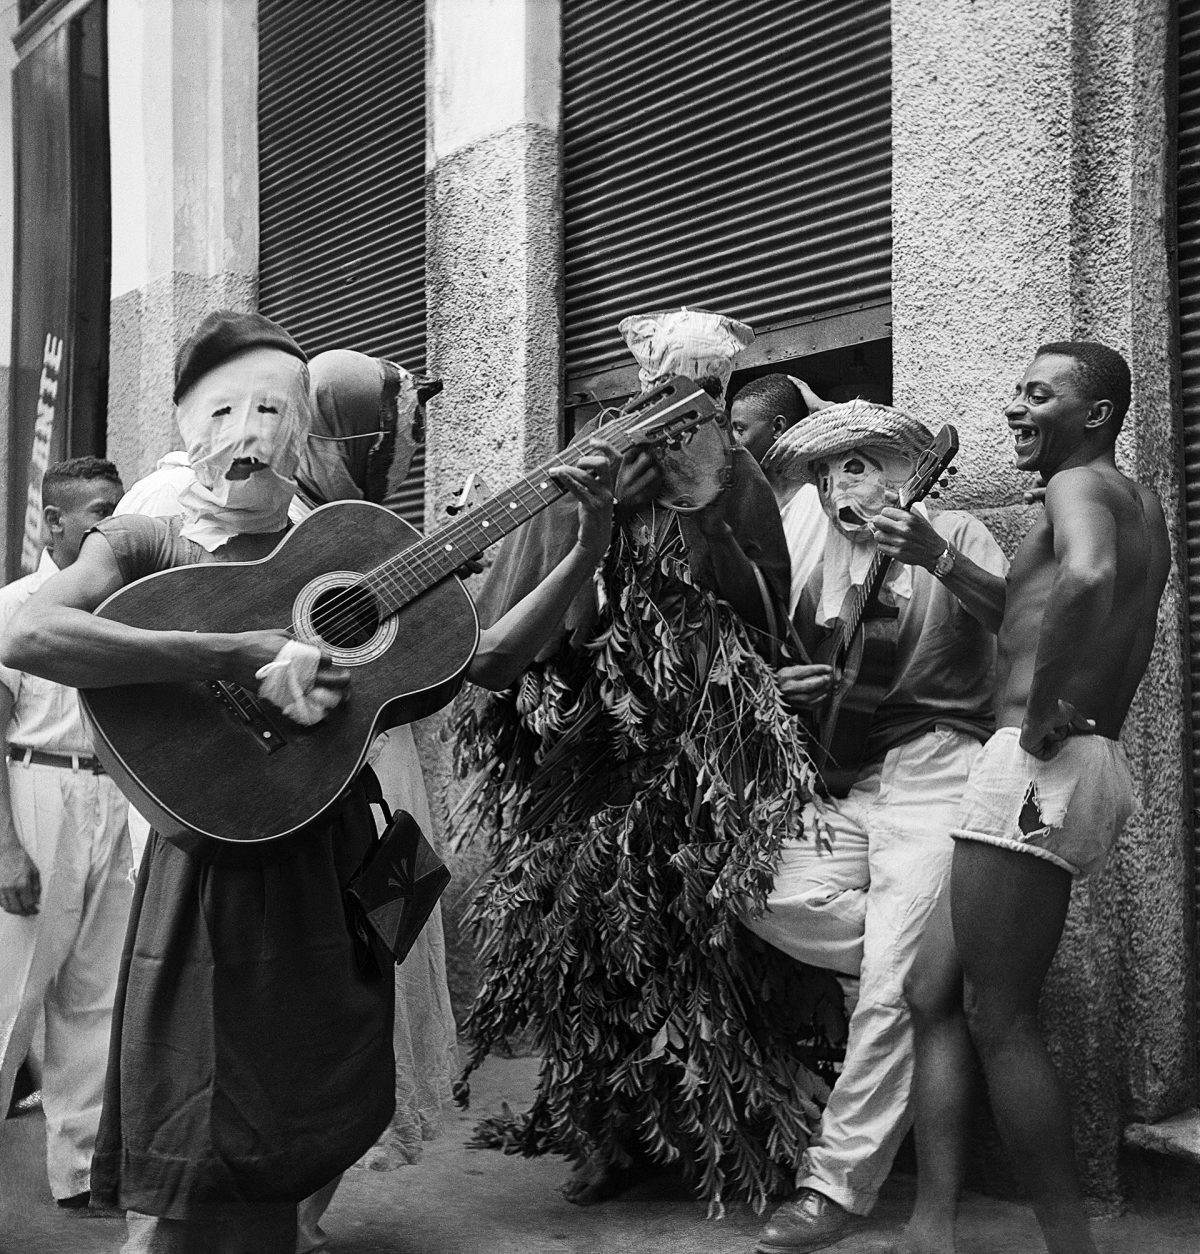 Autoria: Alice Brill Legenda: Salvador, Bahia, 1953  Negativo flexível p&amp;b 6x6 cm